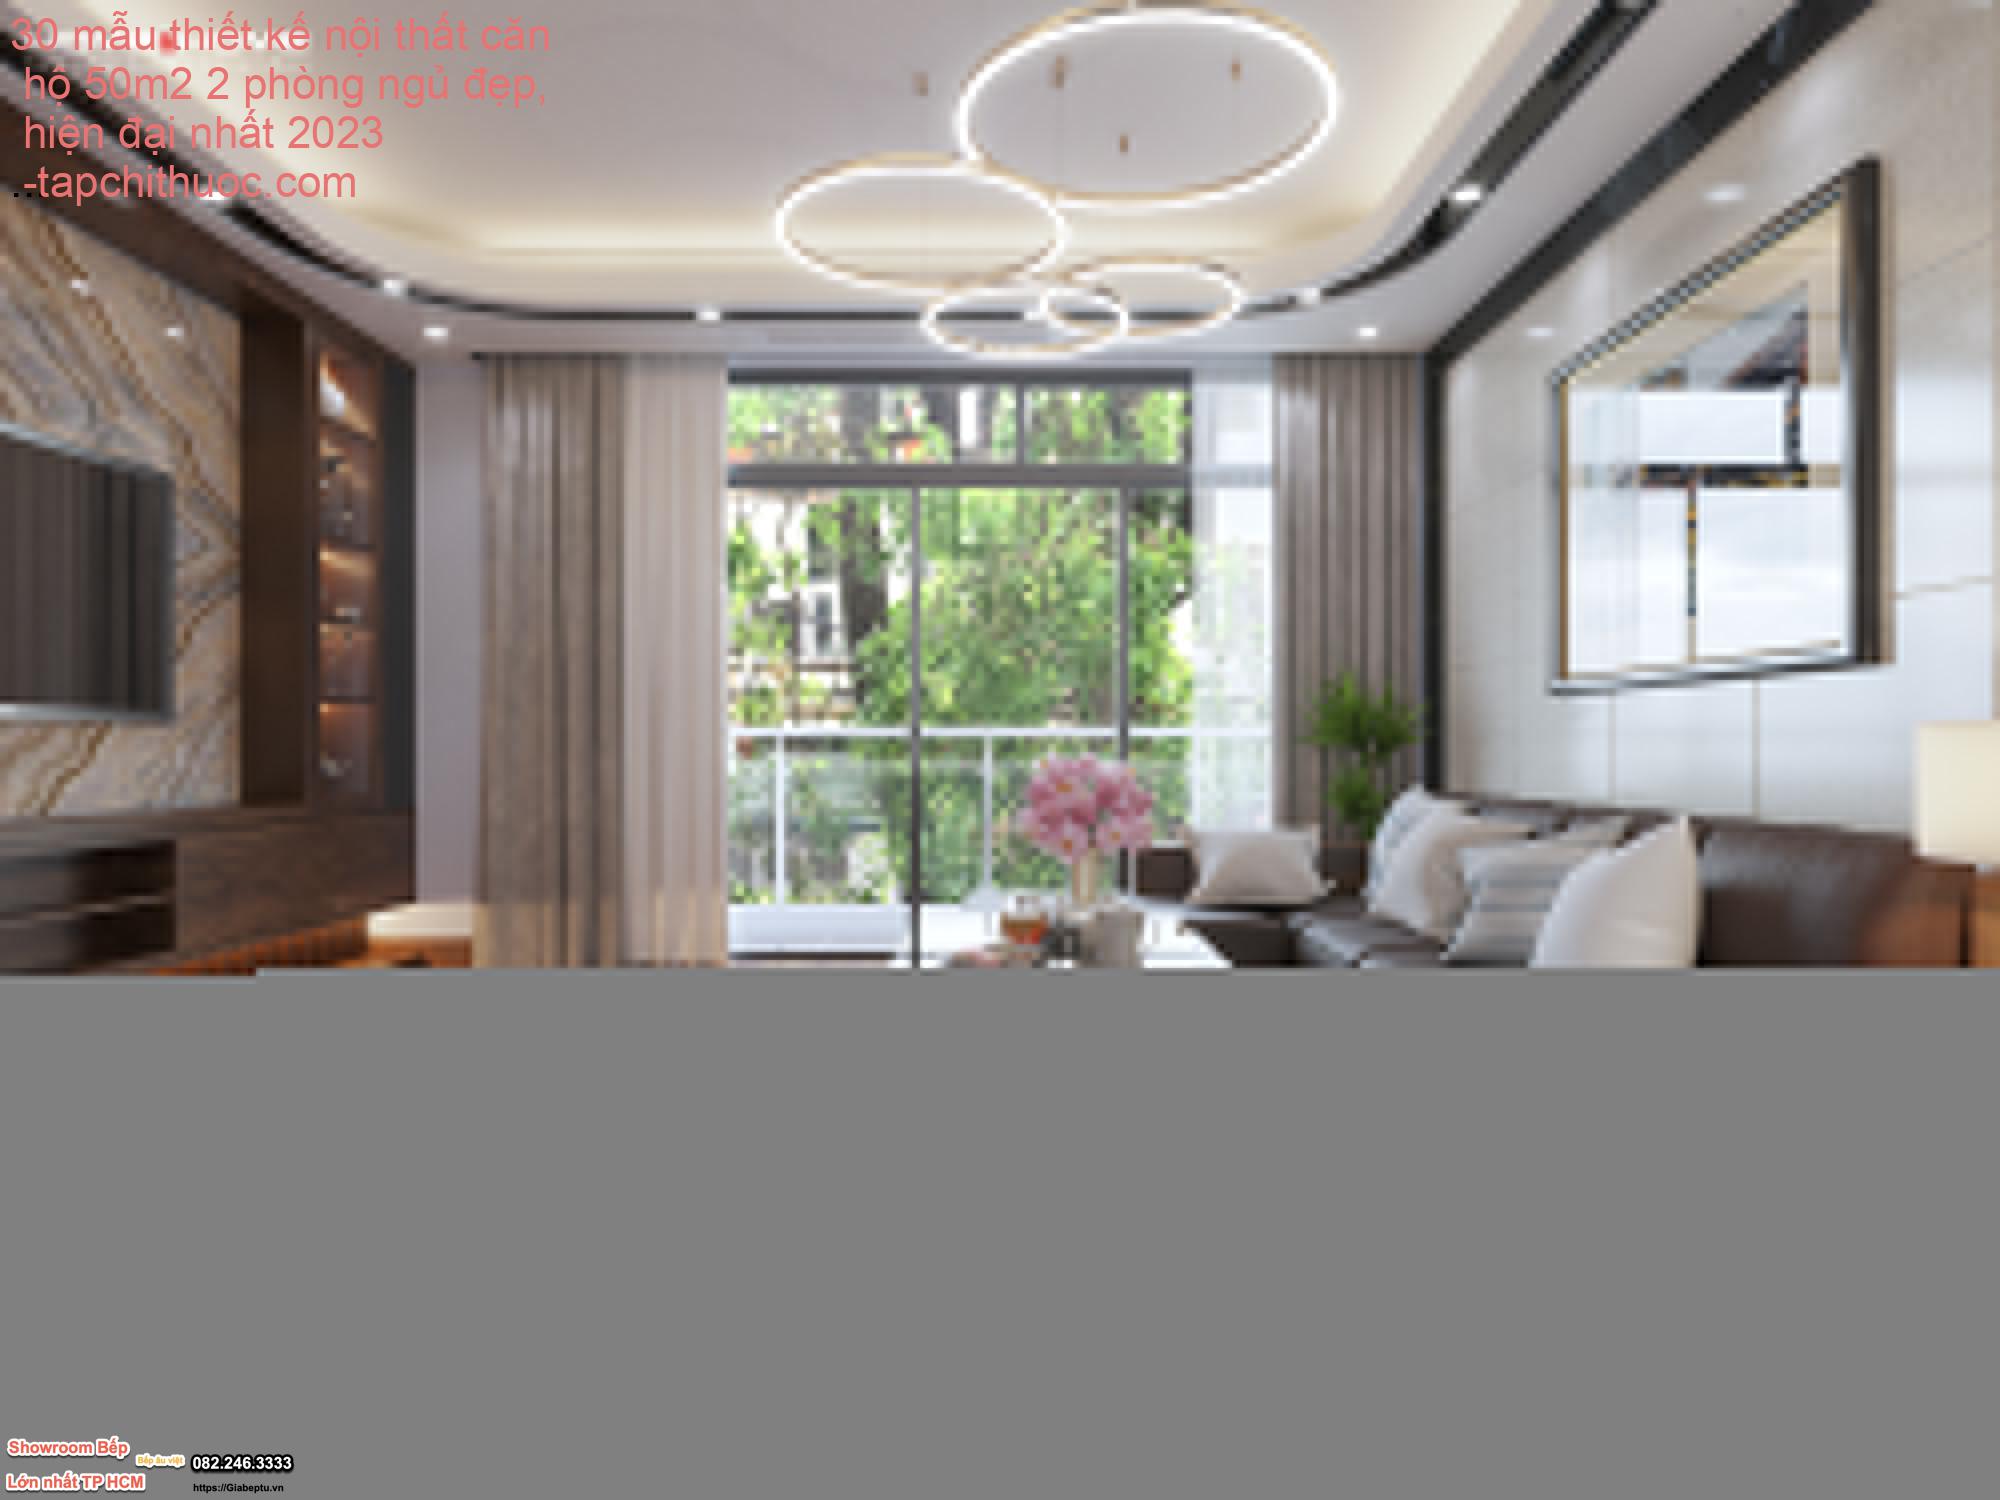 30 mẫu thiết kế nội thất căn hộ 50m2 2 phòng ngủ đẹp, hiện đại nhất 2023